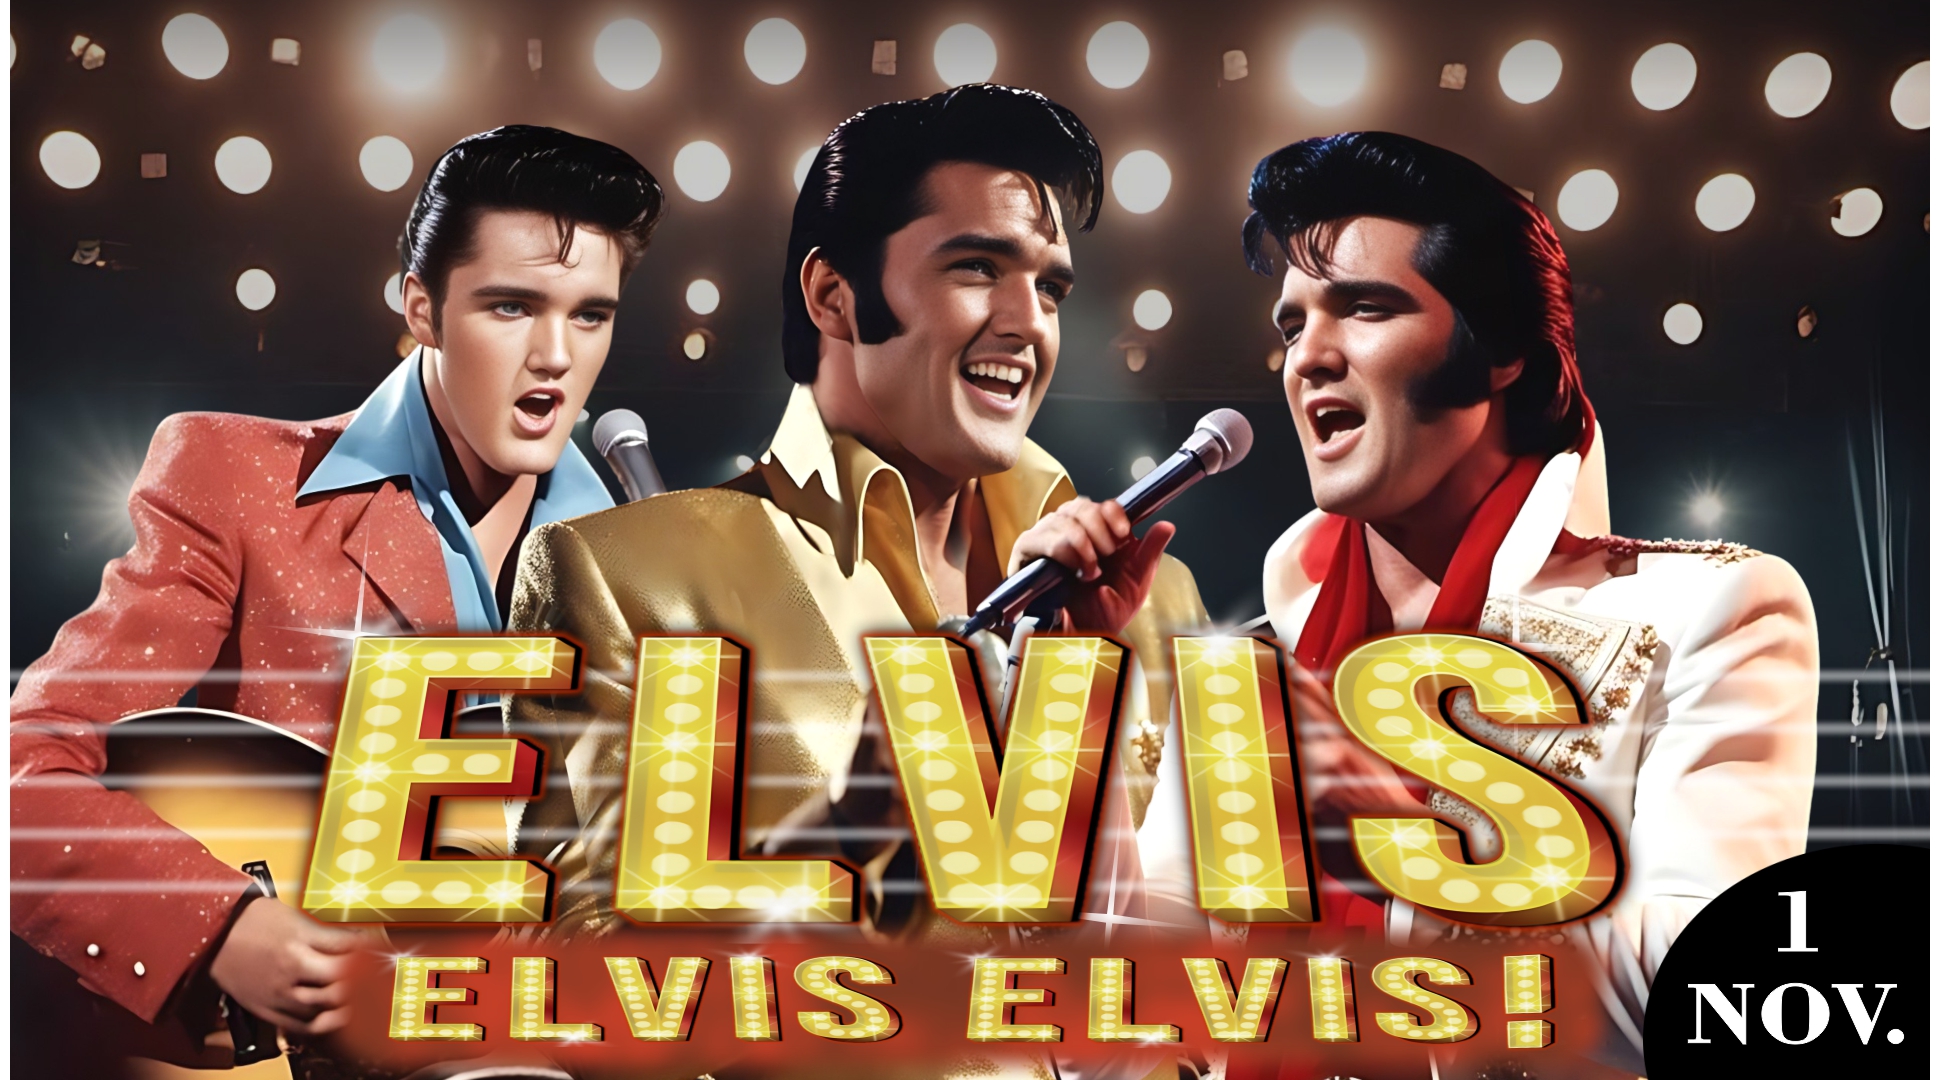 Elvis, Elvis, Elvis! 